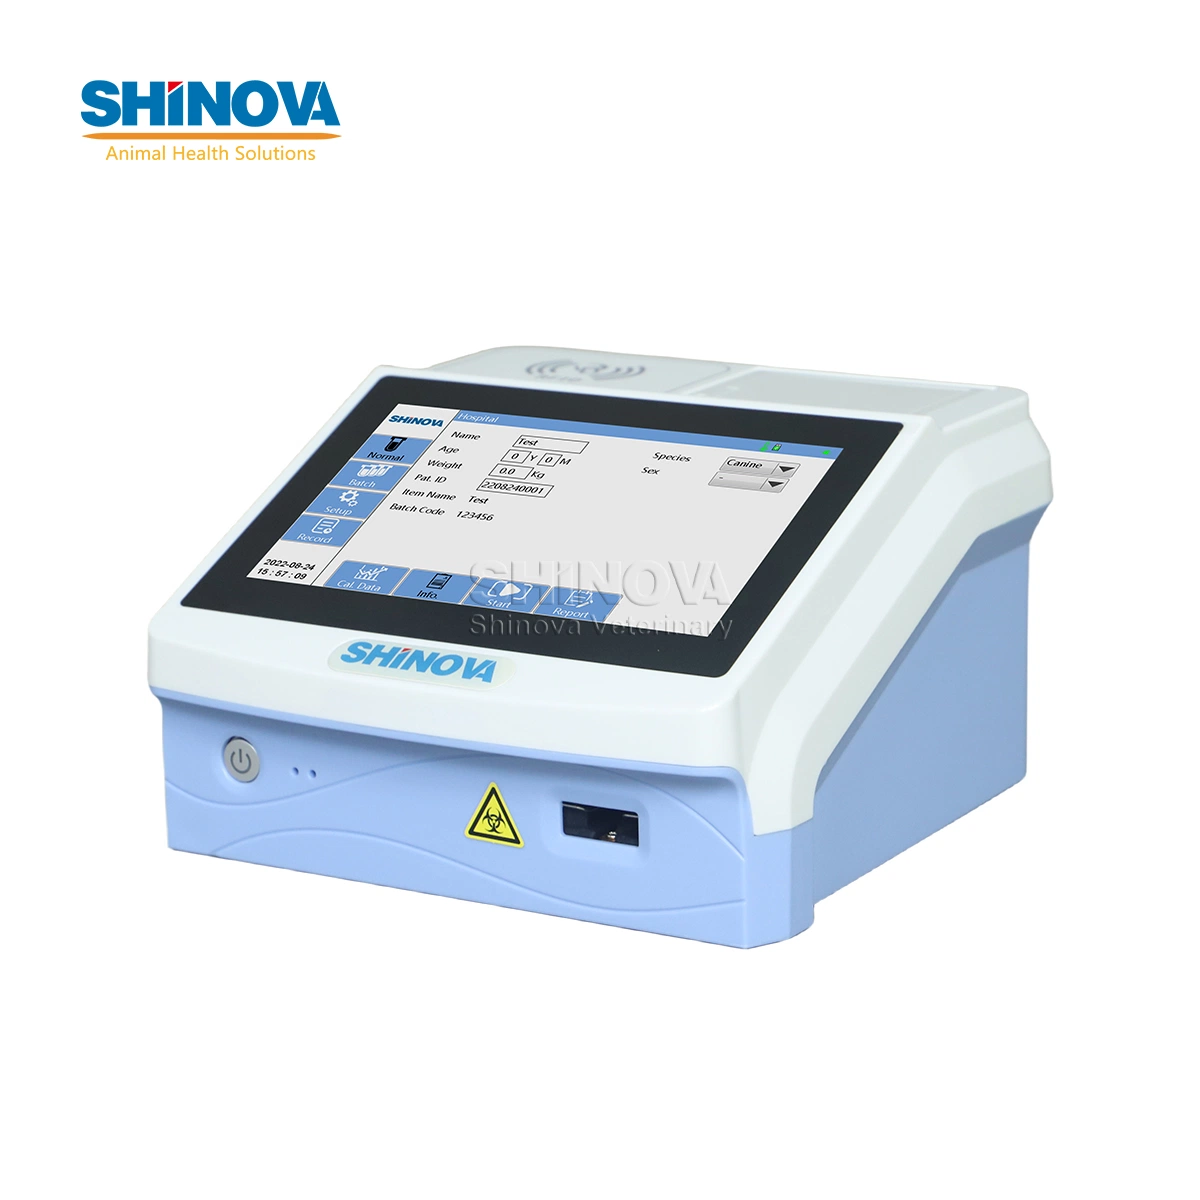 Shinova Ecrã Táctil Veterinary Fluorescence Immunoassay Analyzer Inmunofluorescência veterinária quantitativa Analisador (FQ-100)